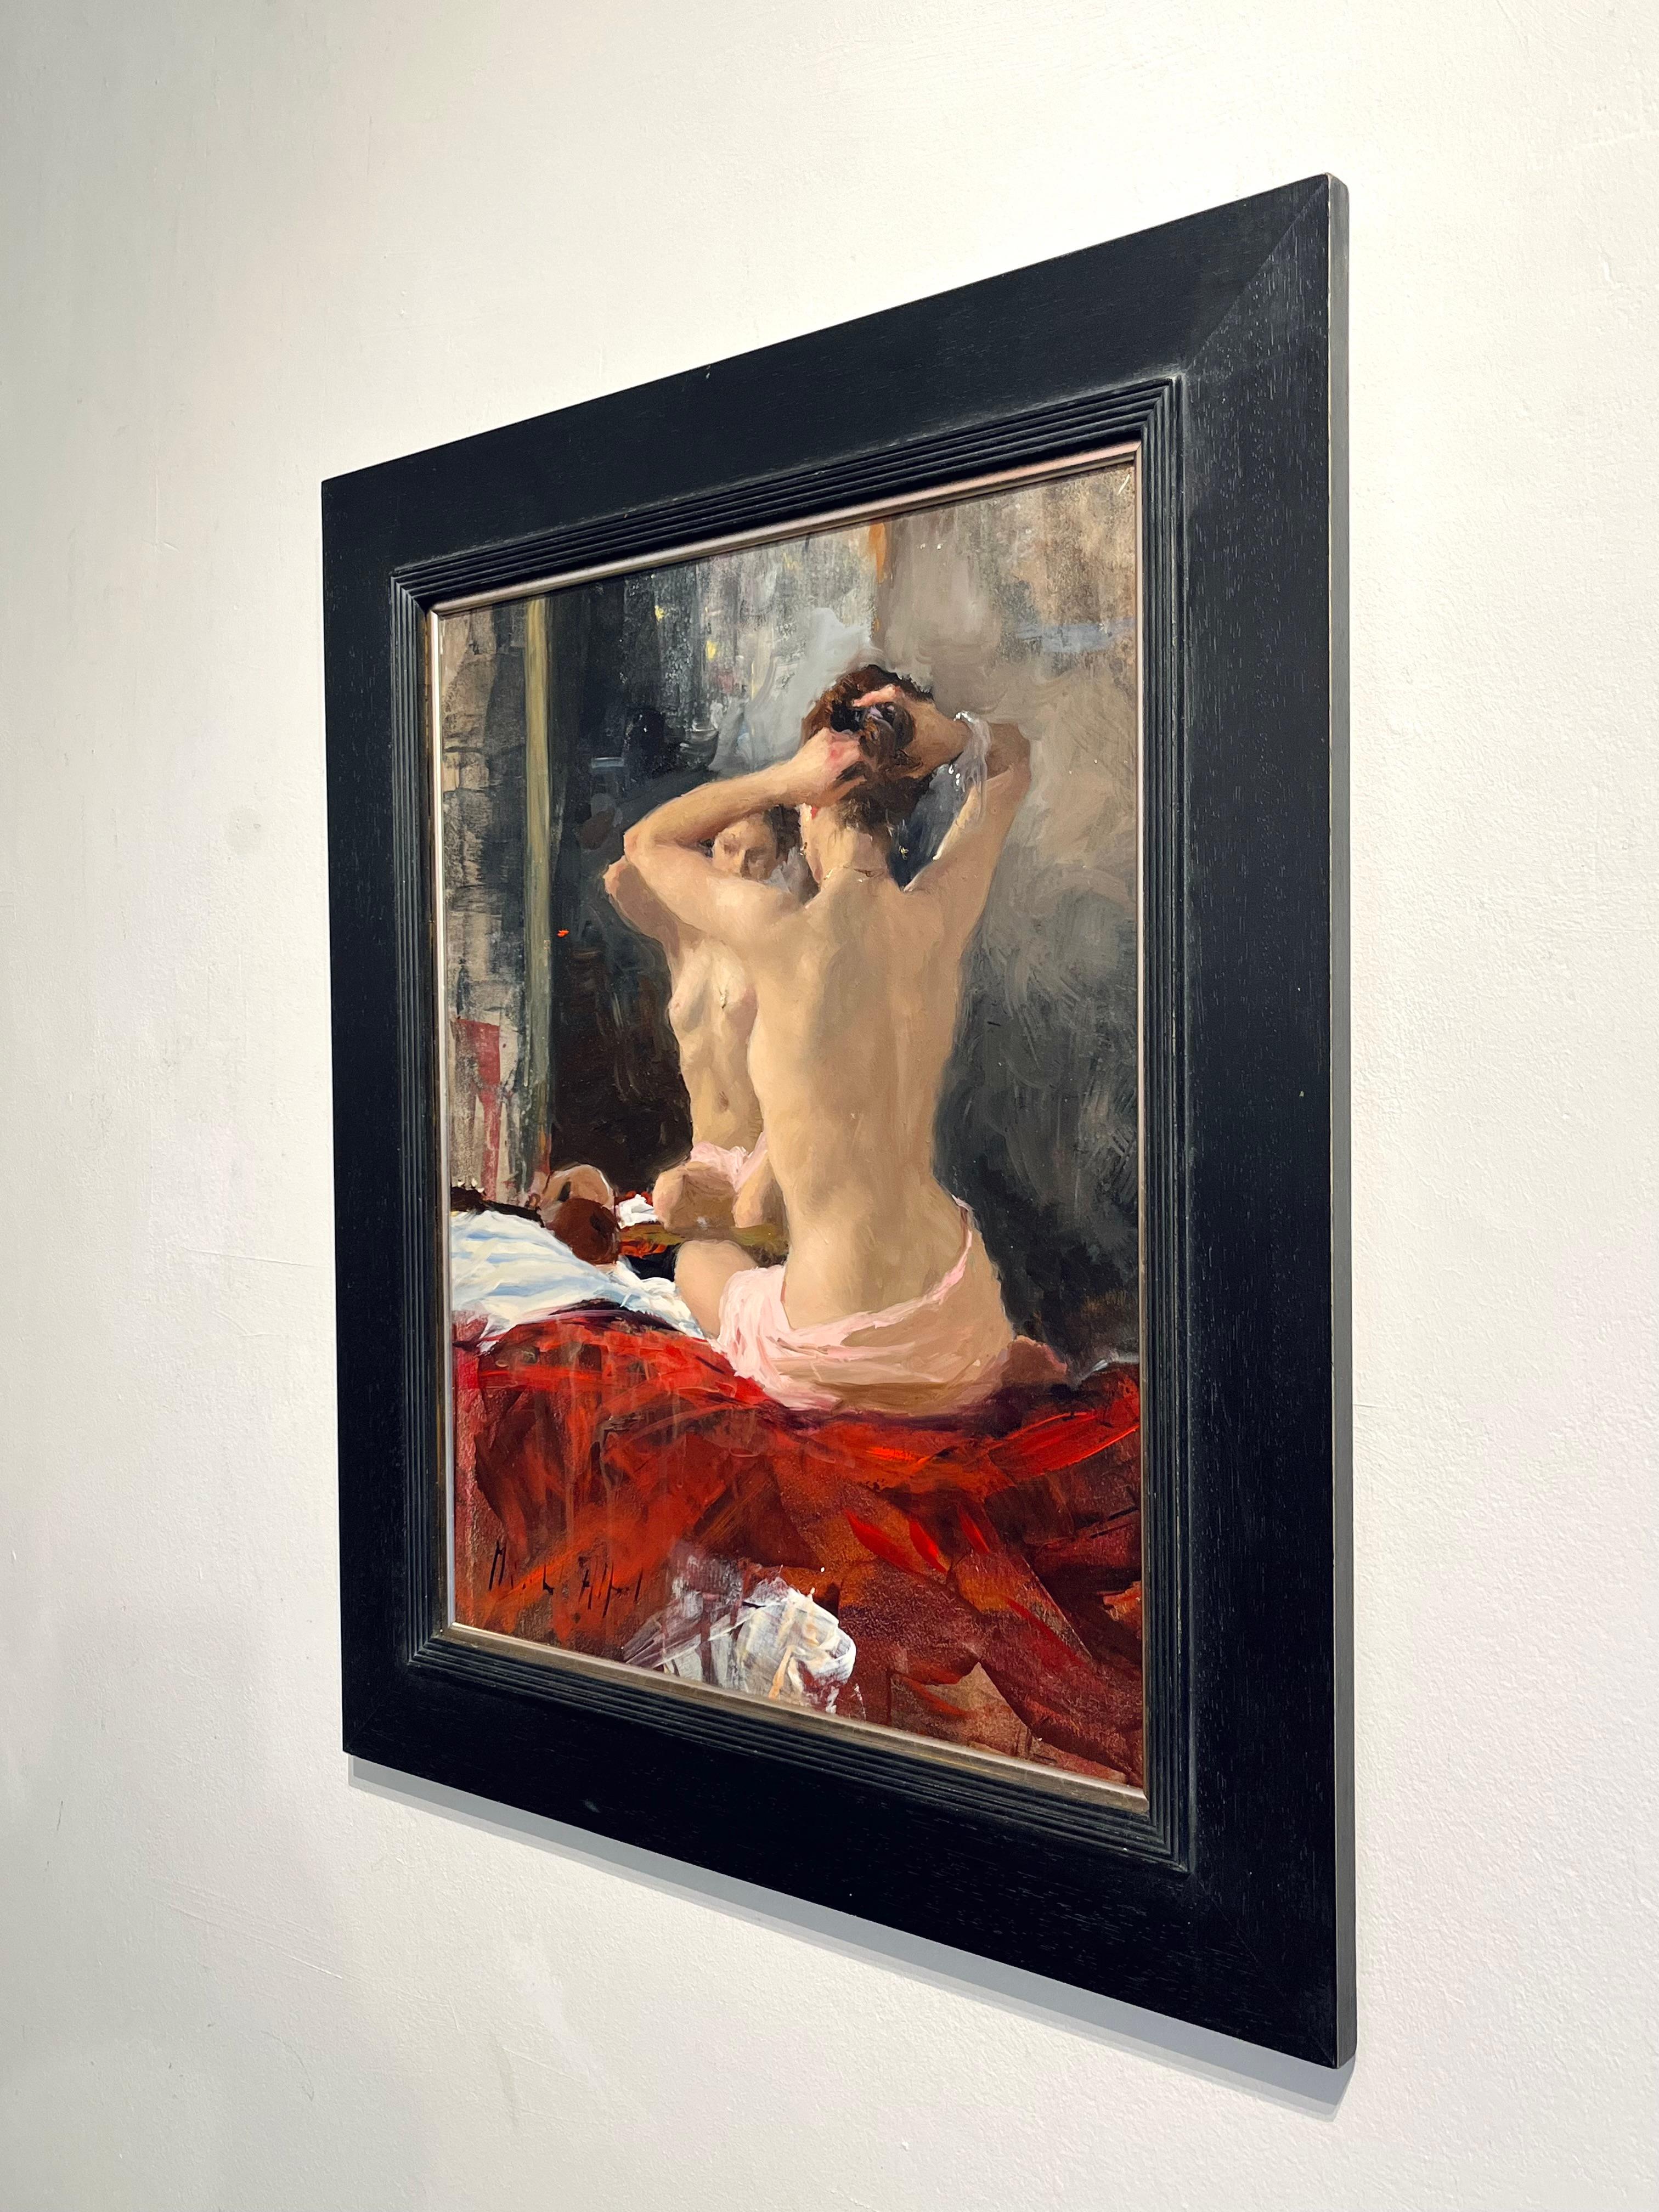 Akt, Spiegelung - original impressionistische Studie einer weiblichen Figur - zeitgenössische Kunst (Impressionismus), Painting, von Michael Alford